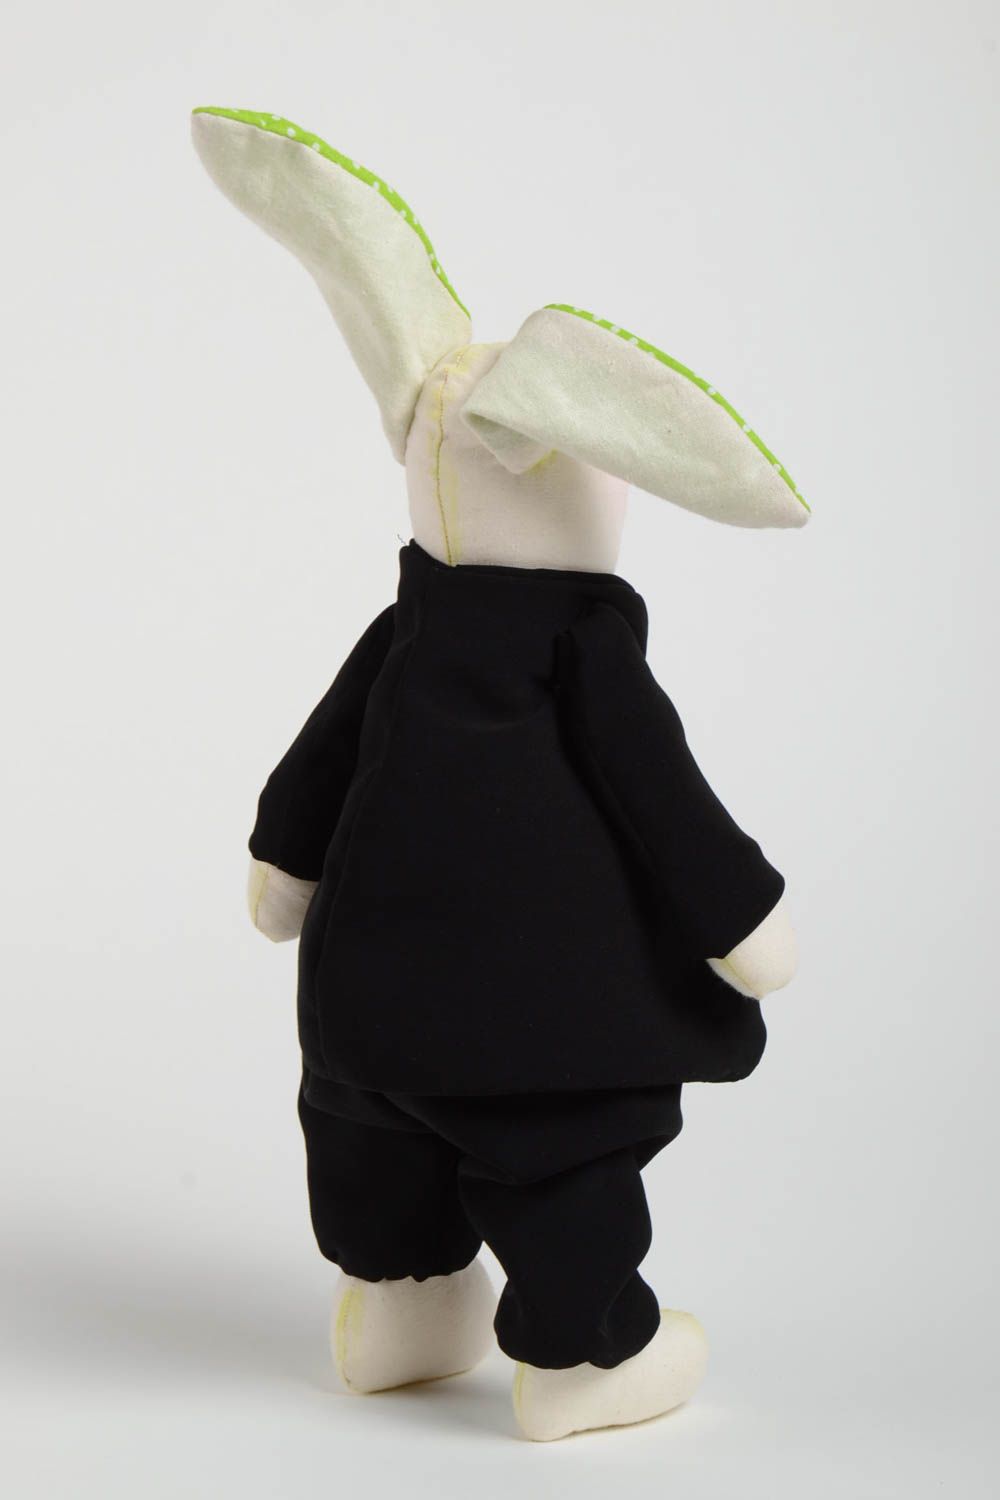 Игрушка заяц жених в костюме красивый из ткани небольшого размера ручная работа фото 4